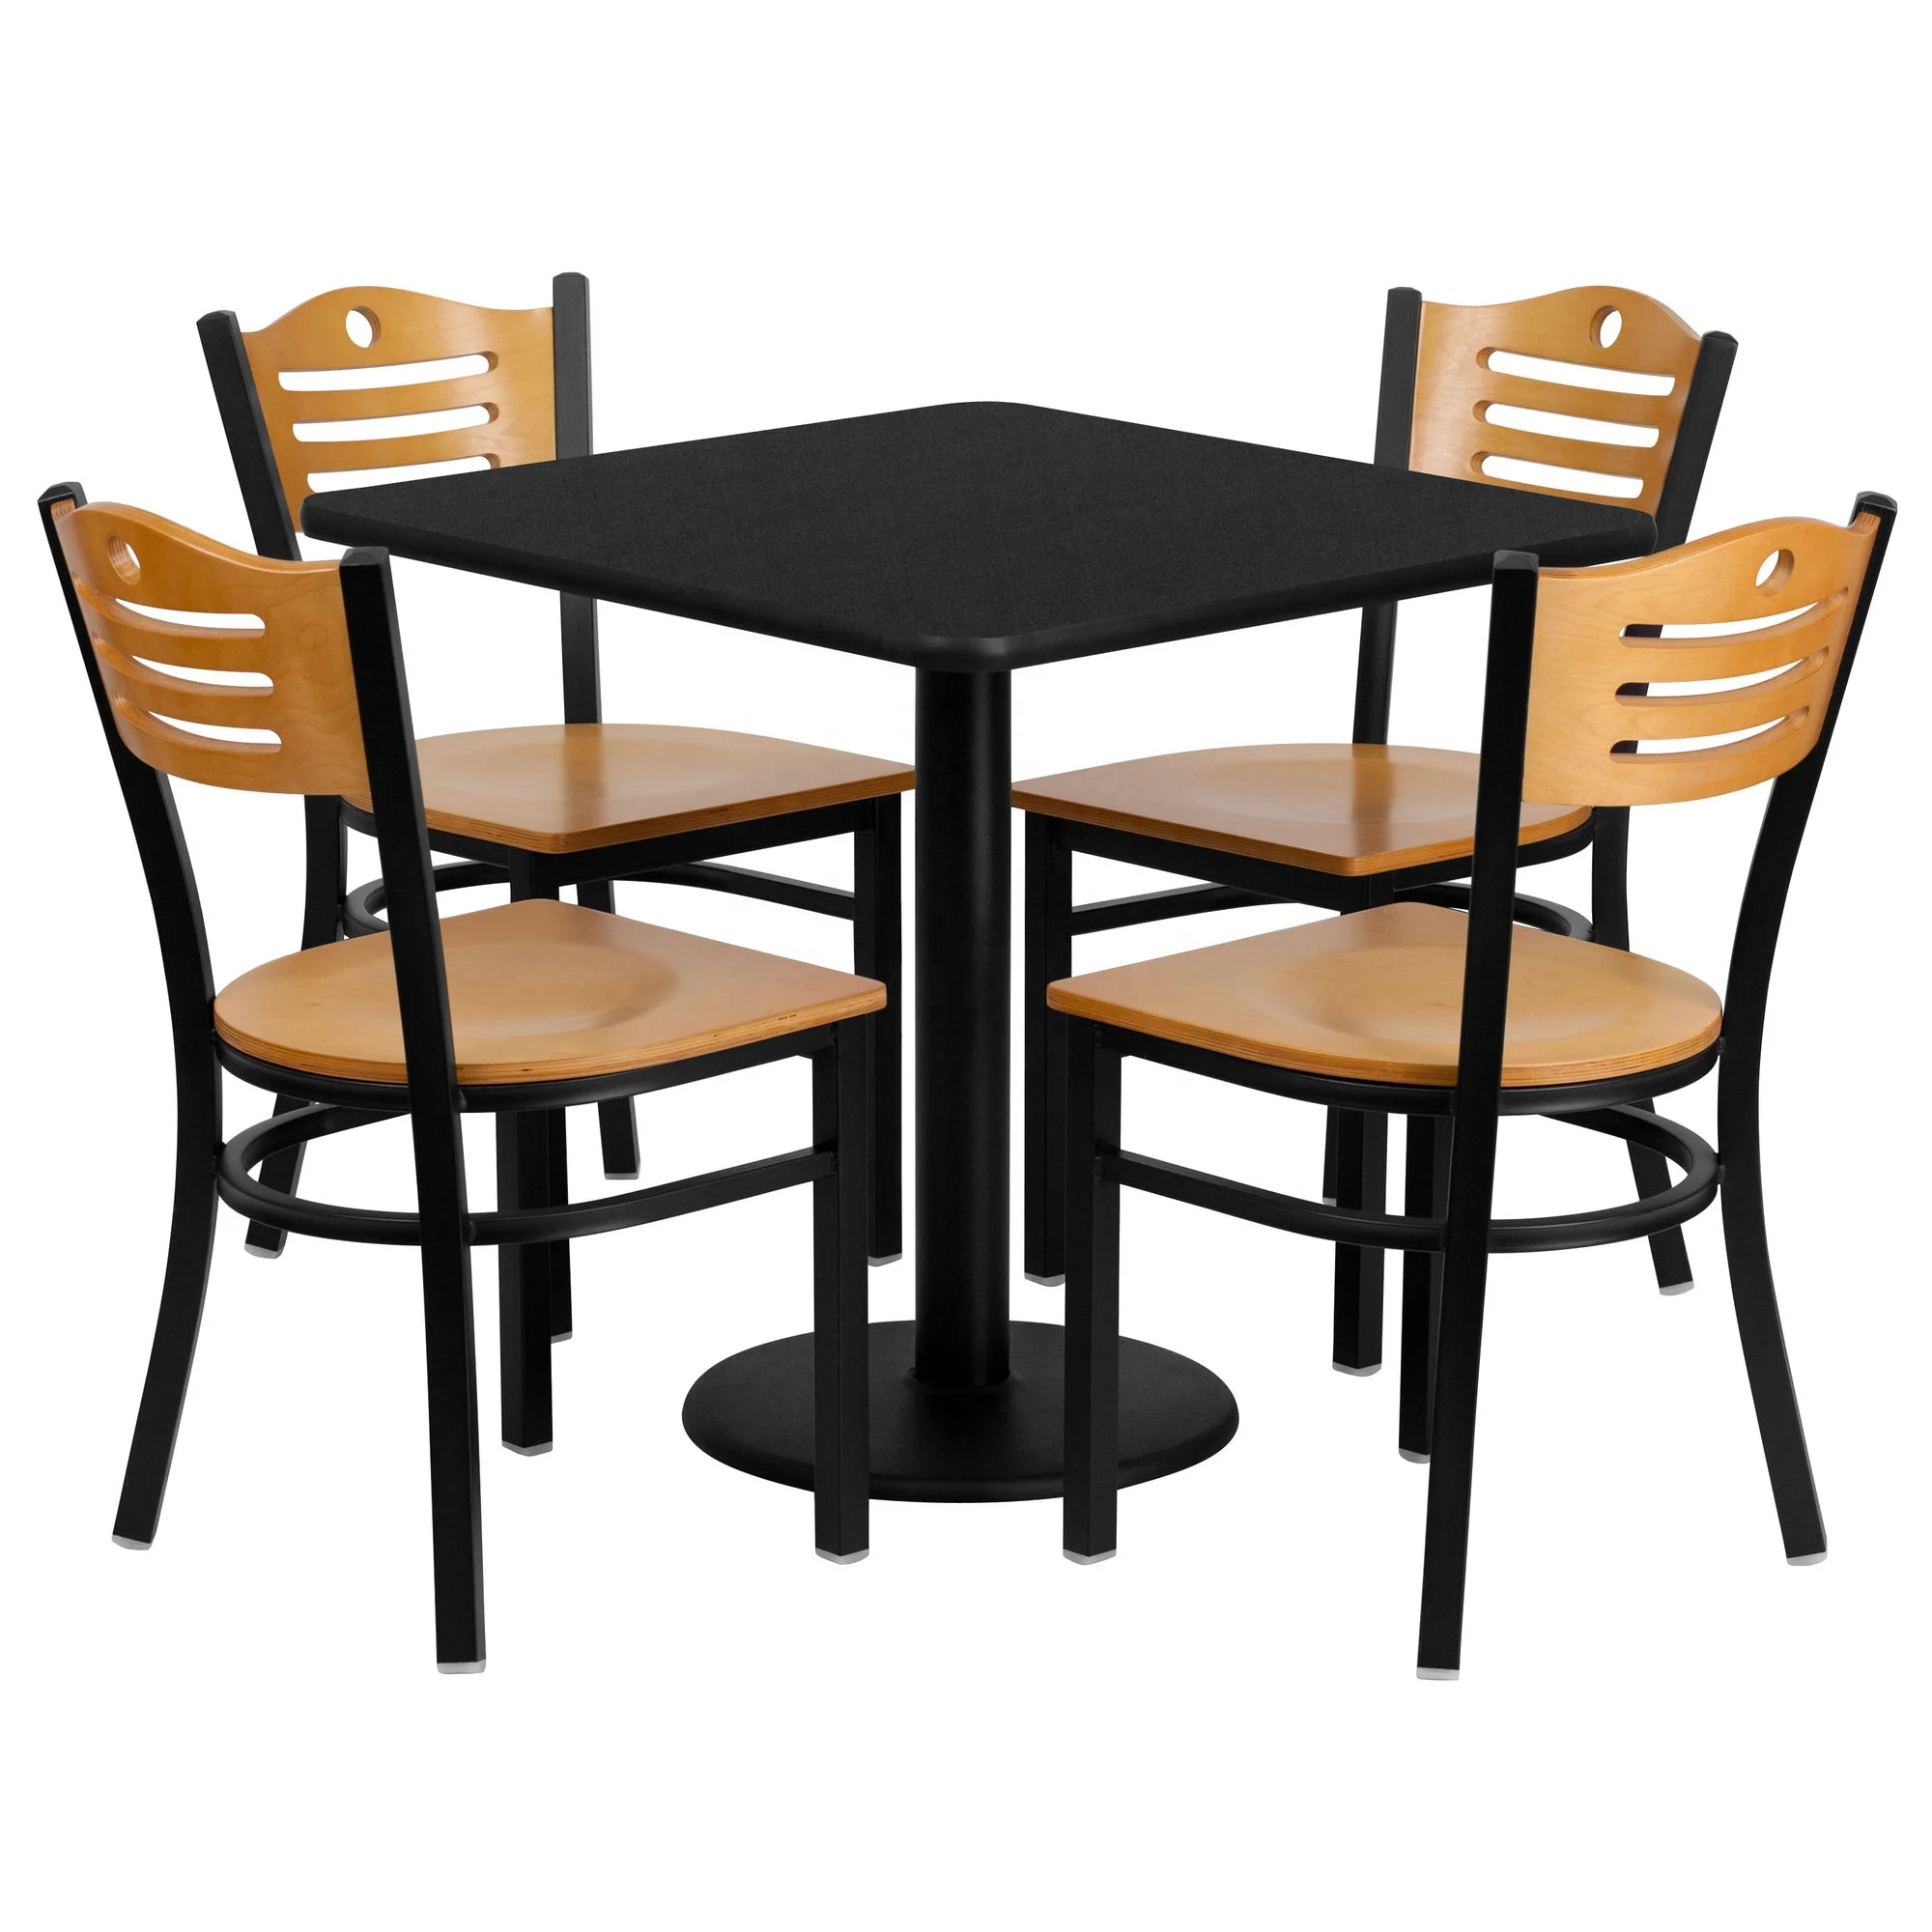 Столы и стулья в кафе